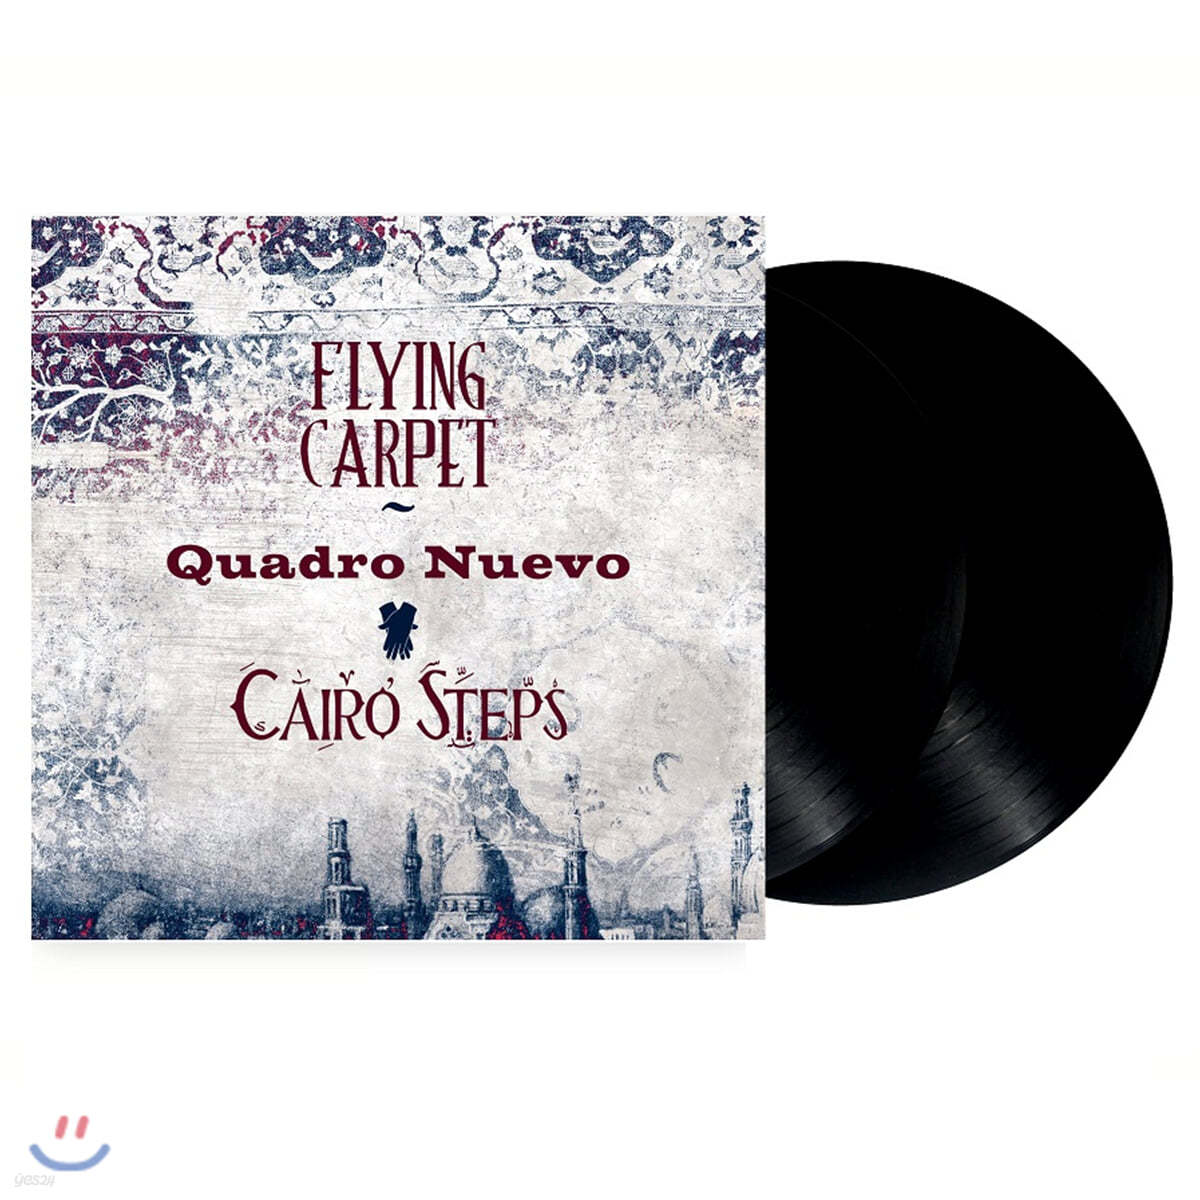 Quadro Nuevo & Cairo Steps (콰드로 누에보 & 카이로 스텝스) - Flying Carpet [2LP]